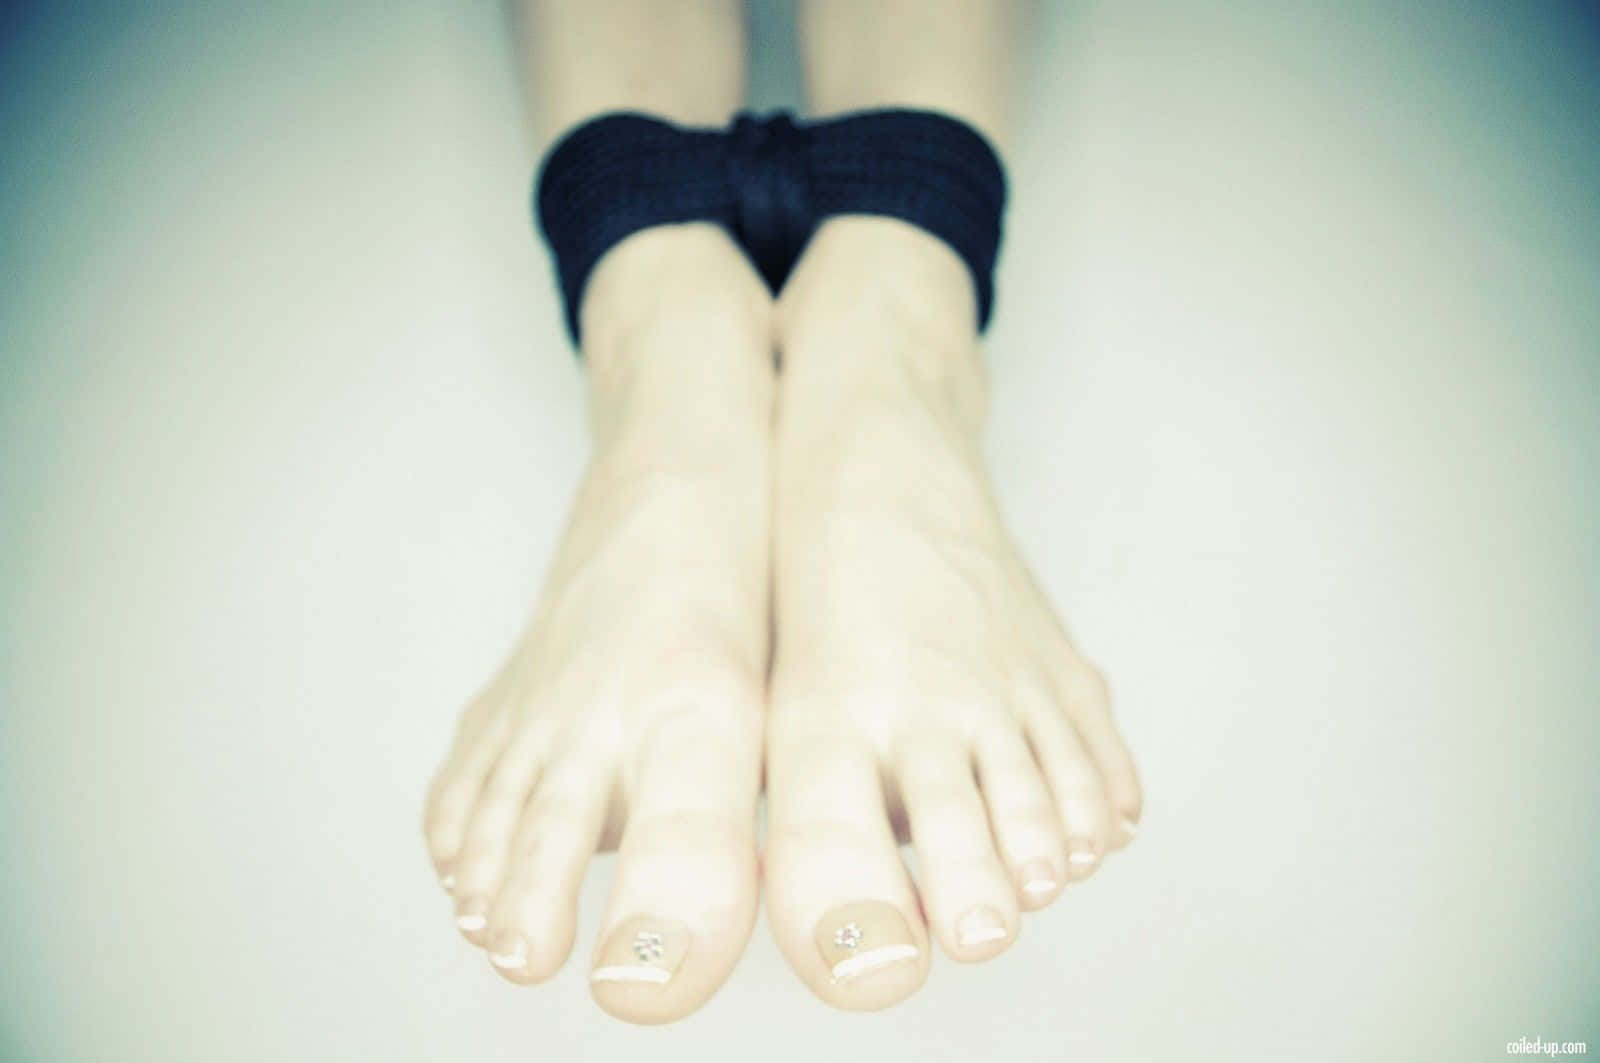 Tied Bare White Girl Feet Wallpaper